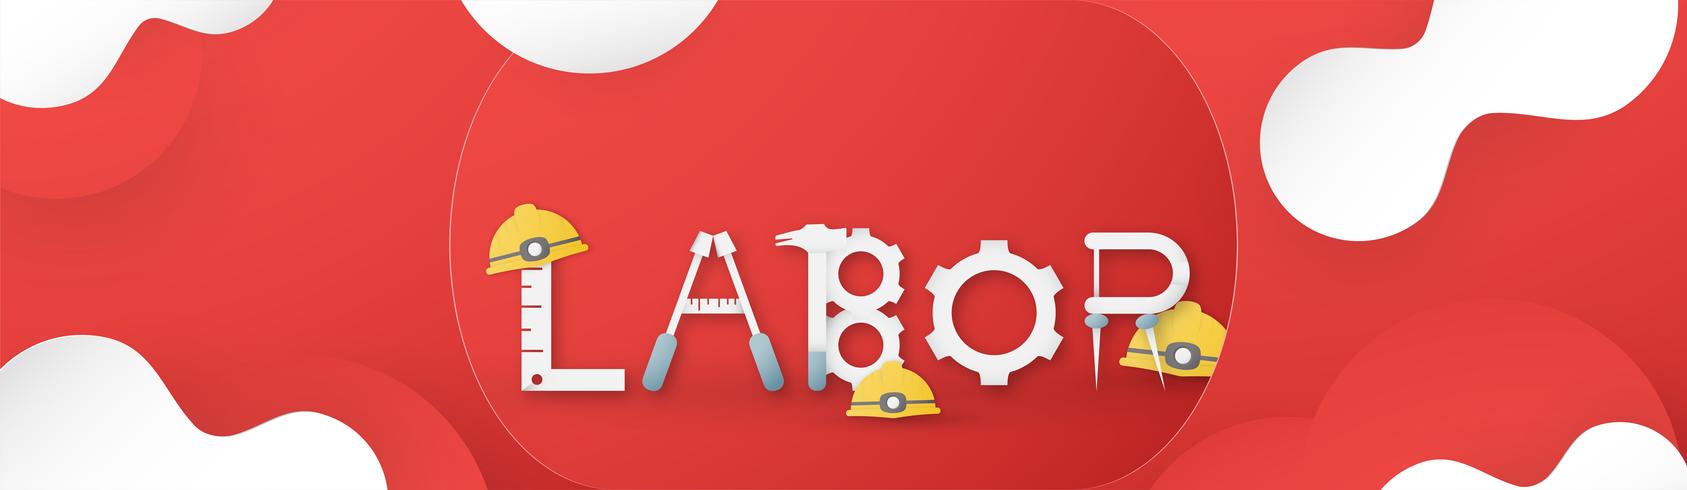 Happy Labour Day am 1. Mai von Jahren. Template-Design für Banner, Poster, Cover, Werbung, Website. Vector Illustration im Papierschnitt und machen Sie Art auf rotem Hintergrund in Handarbeit.